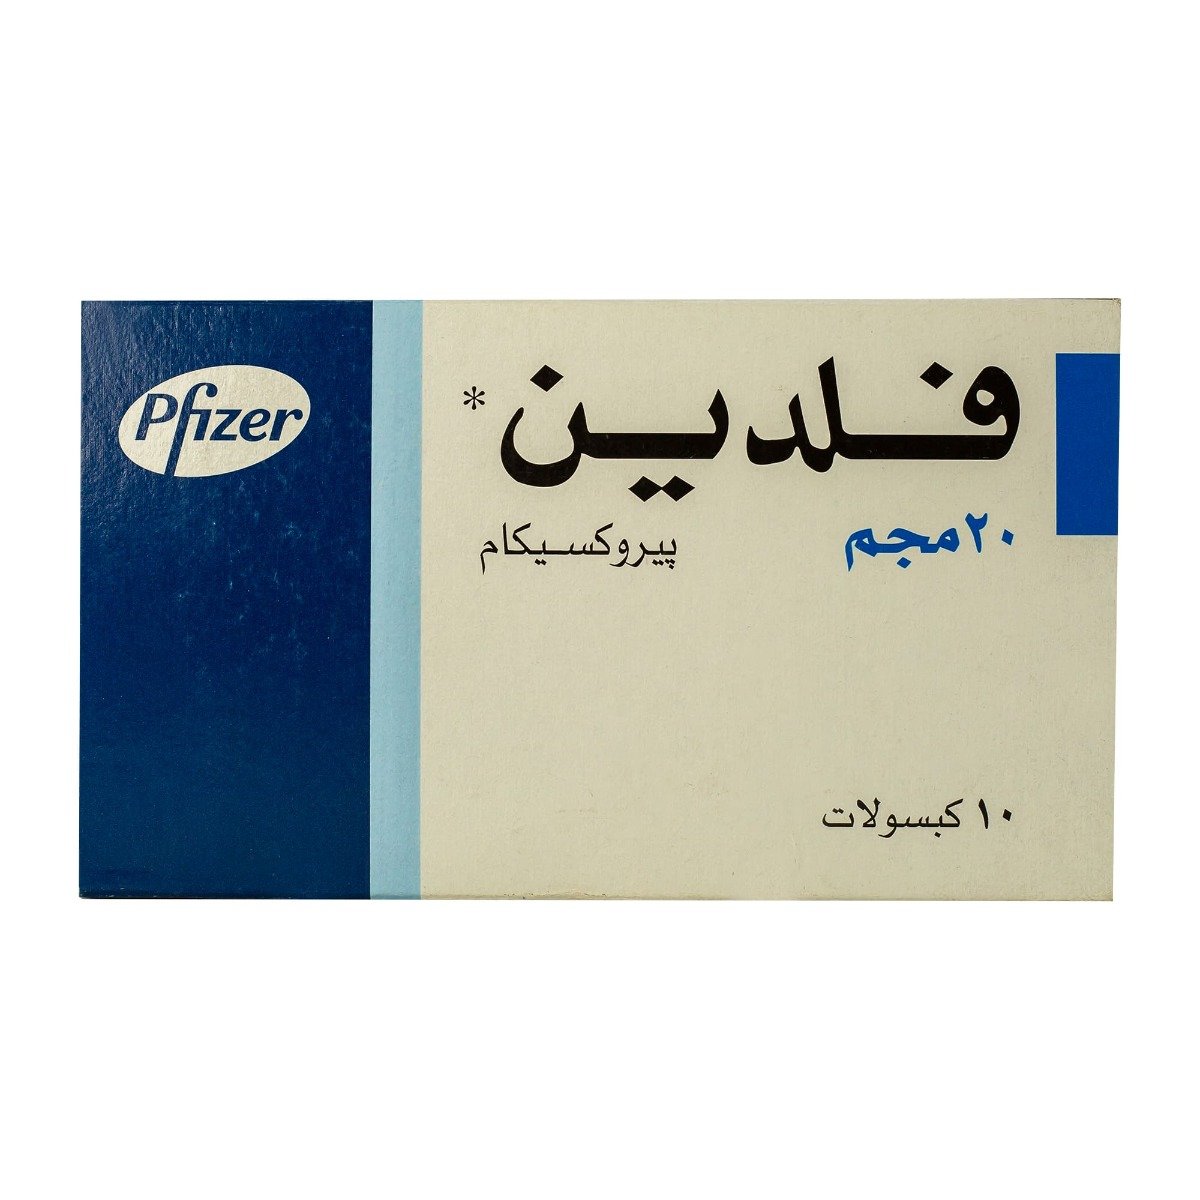 Feldene 20 mg - 10 Capsules - Bloom Pharmacy